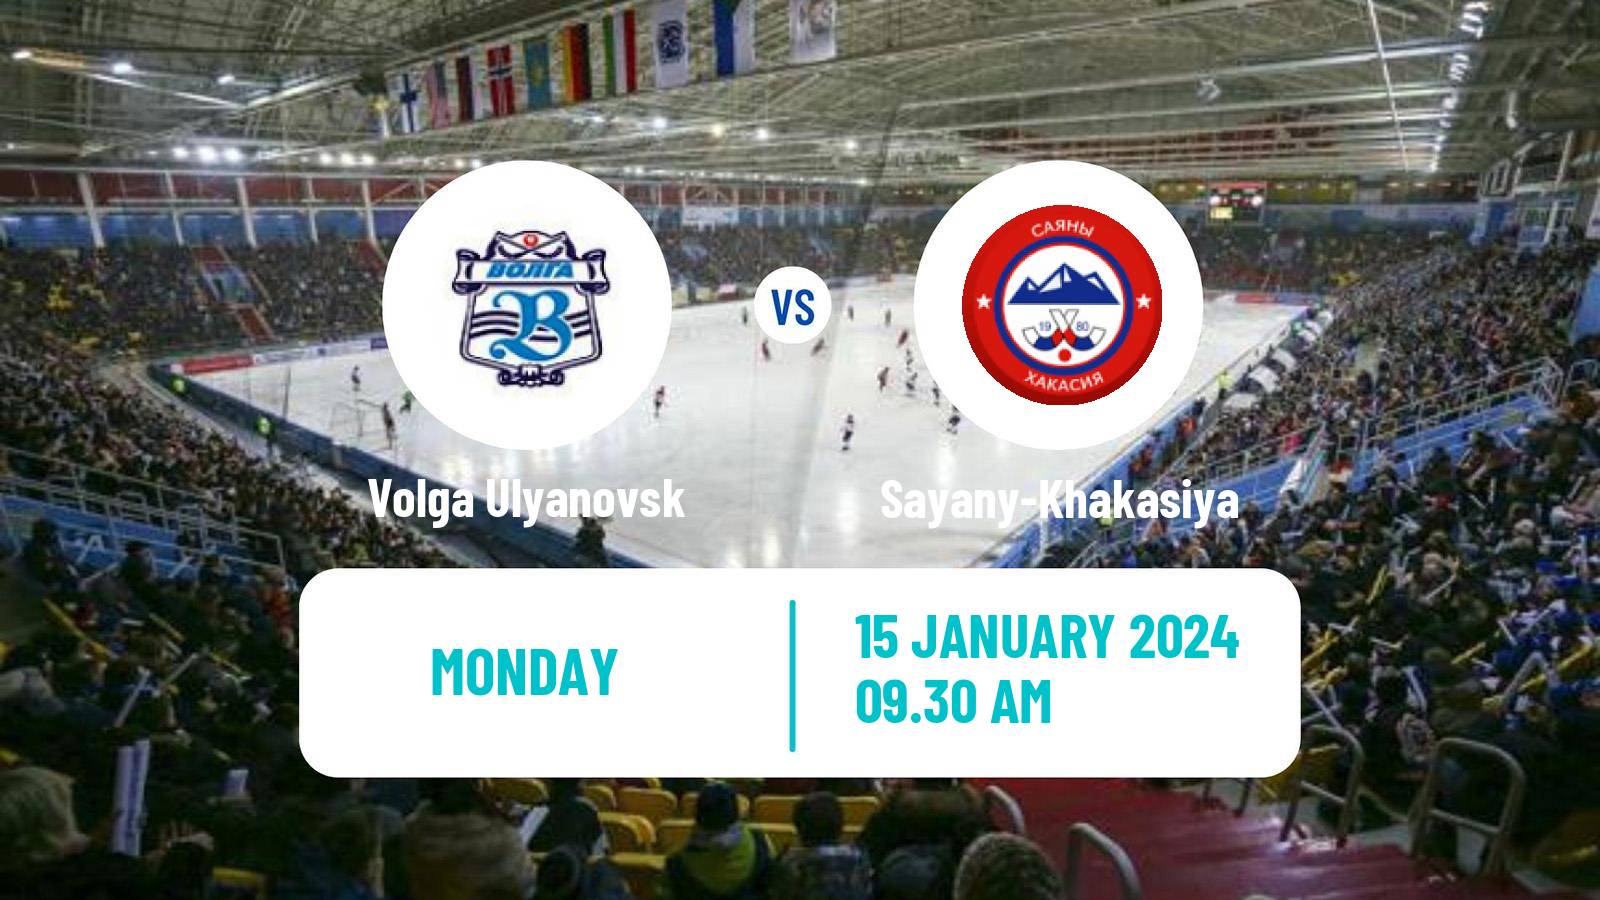 Bandy Russian Super League Bandy Volga Ulyanovsk - Sayany-Khakasiya